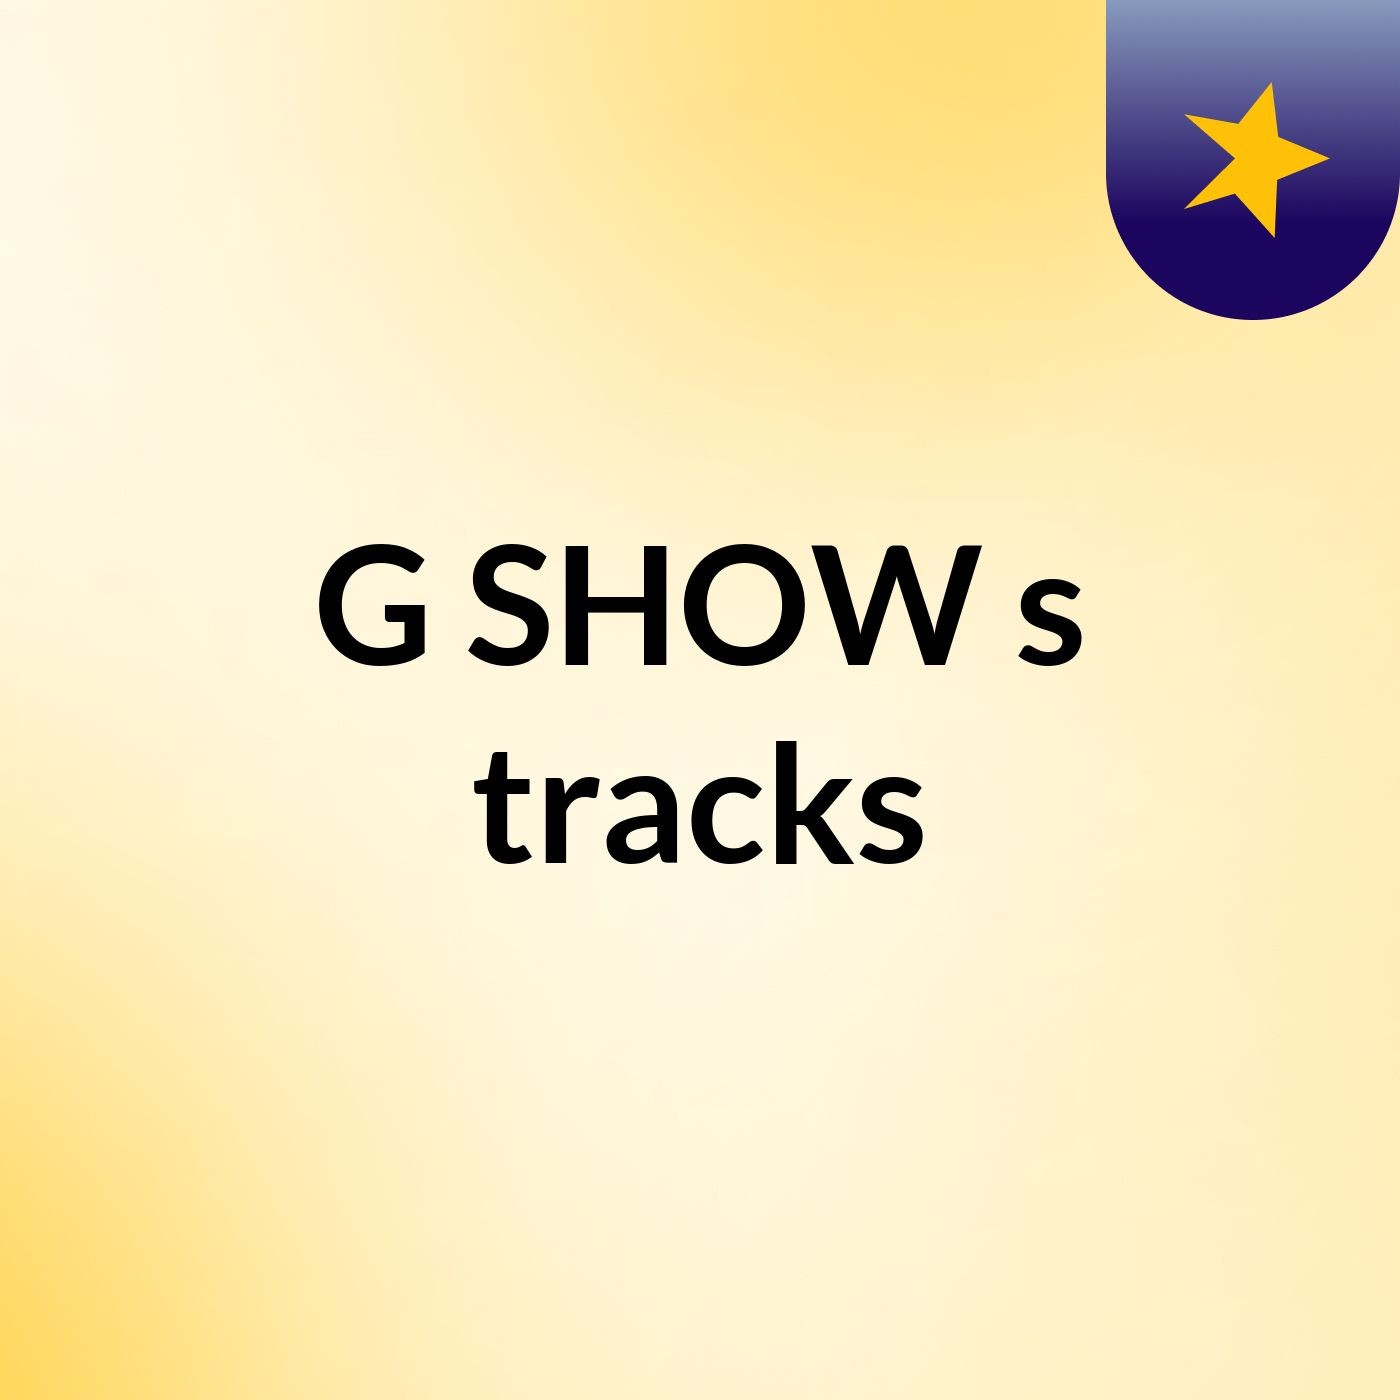 G SHOW's tracks